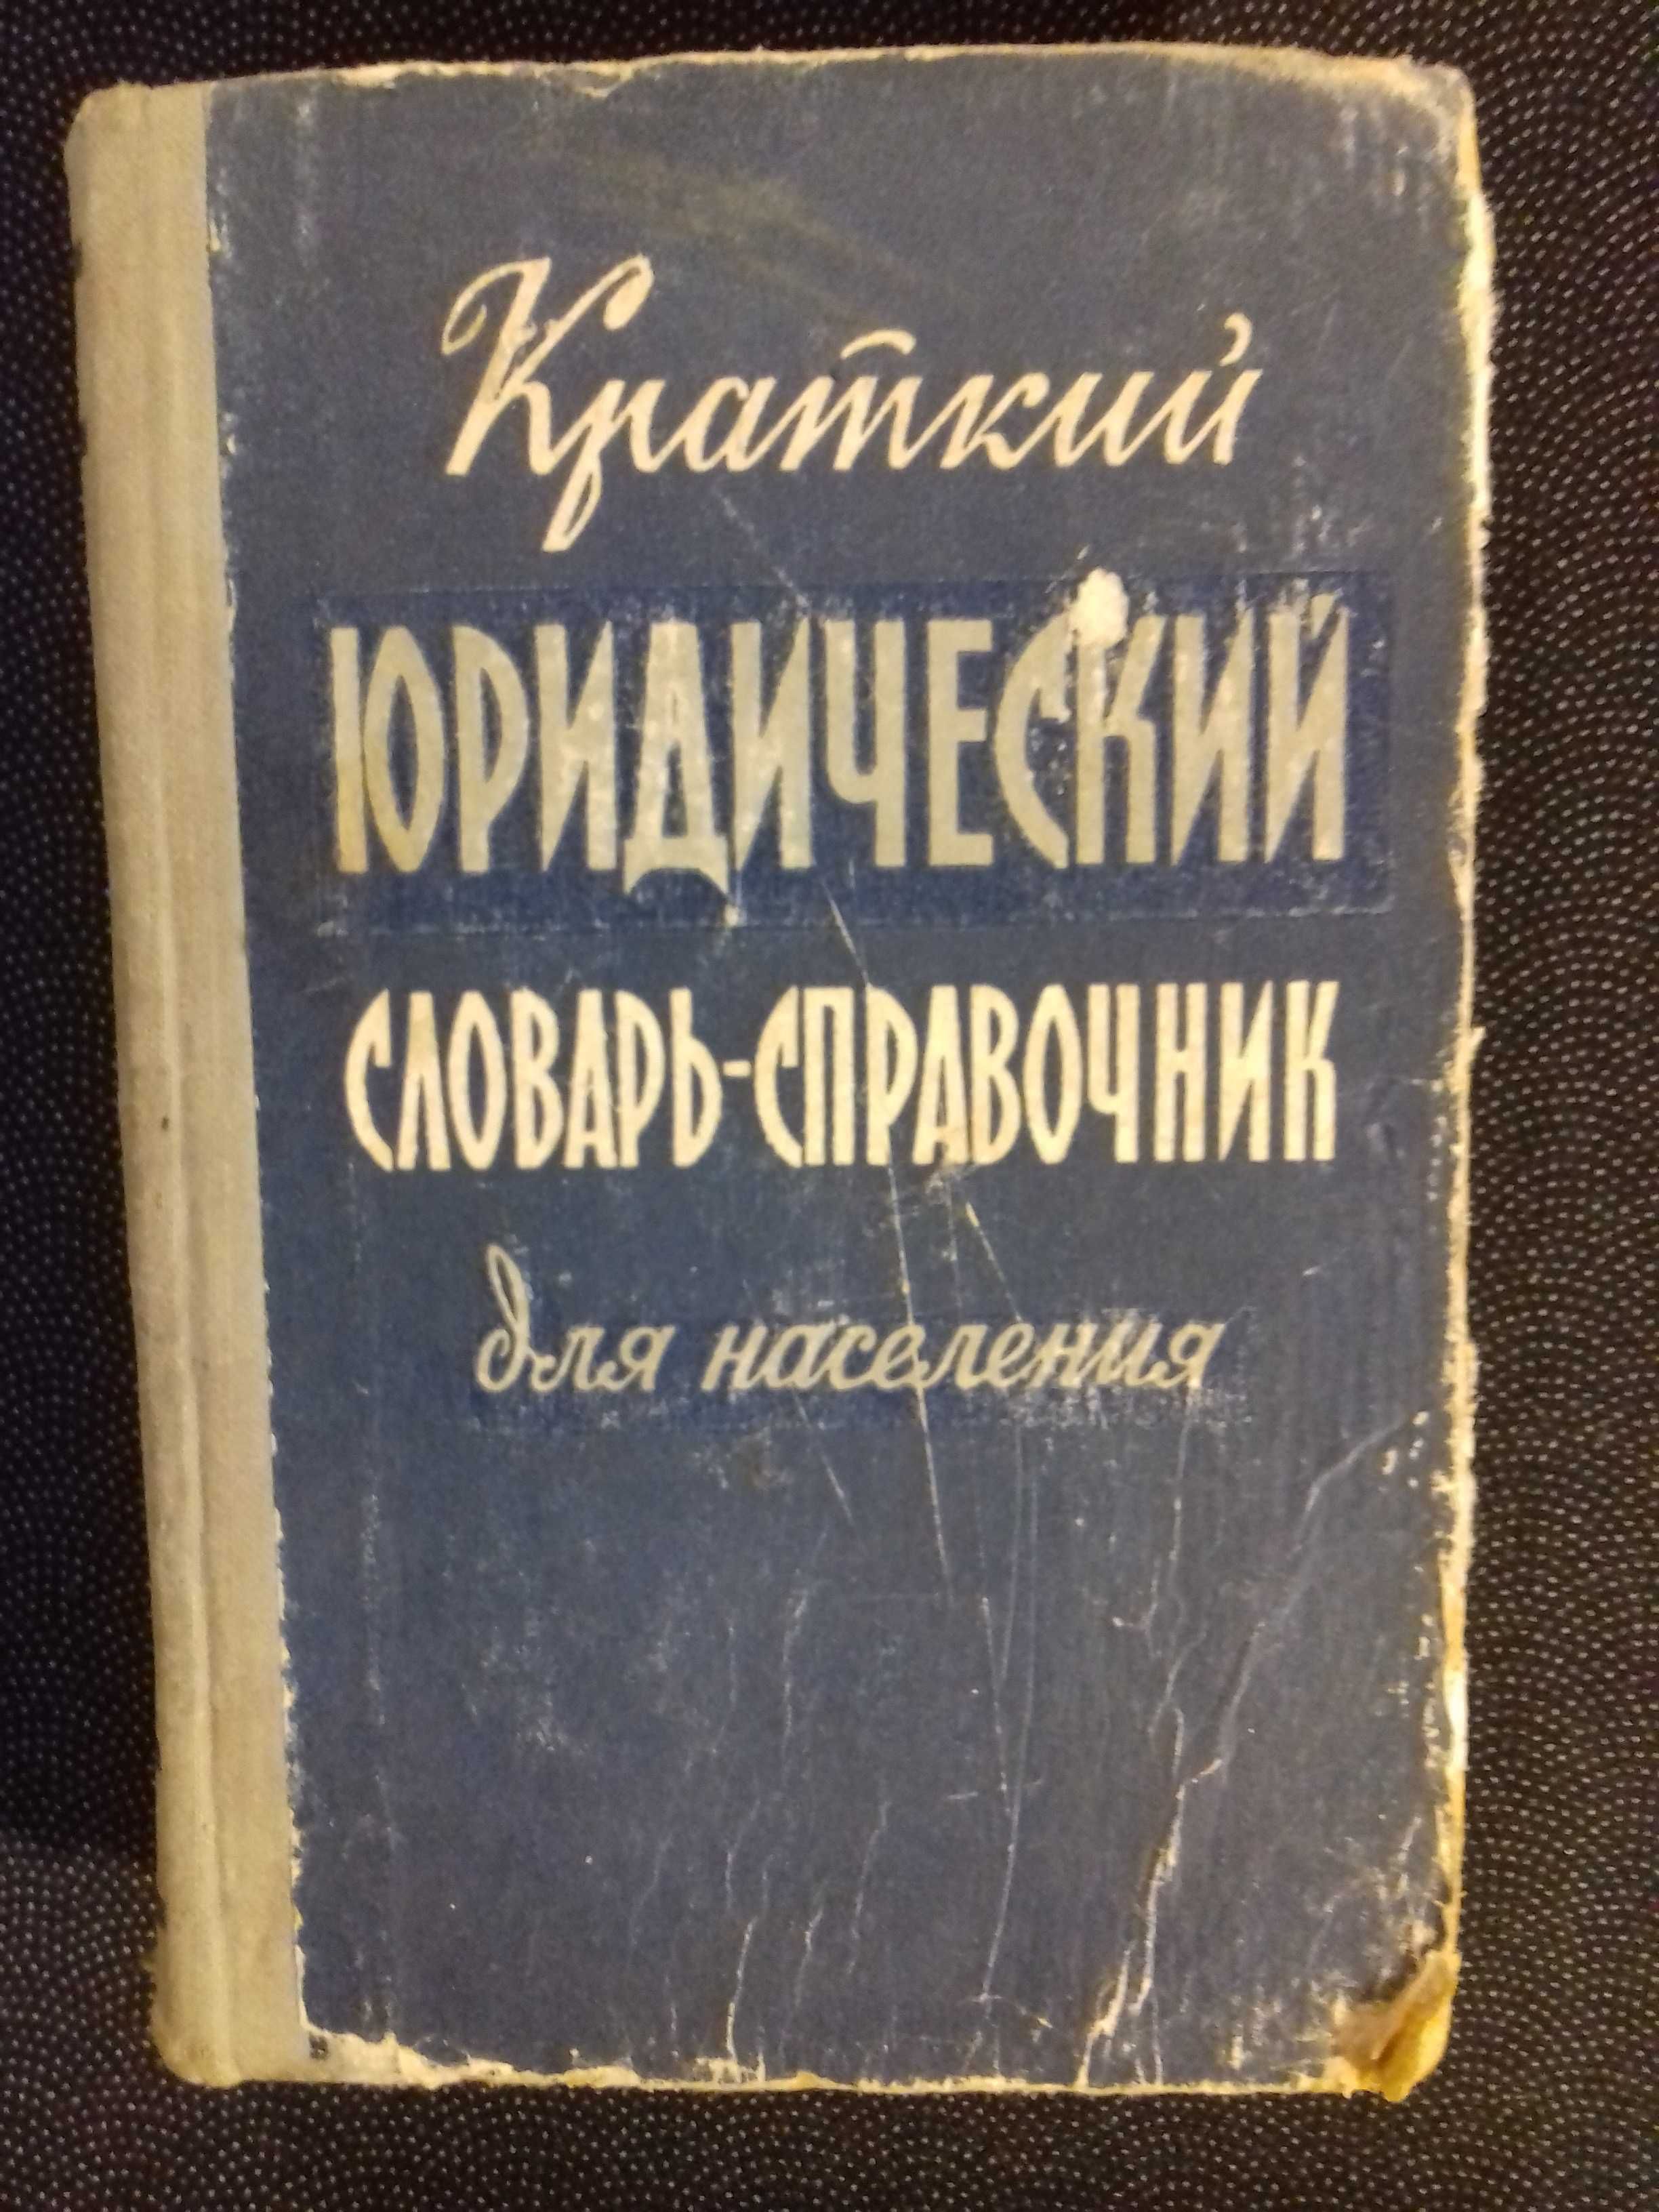 Юридический словарь-справочник.Книга 1960 года